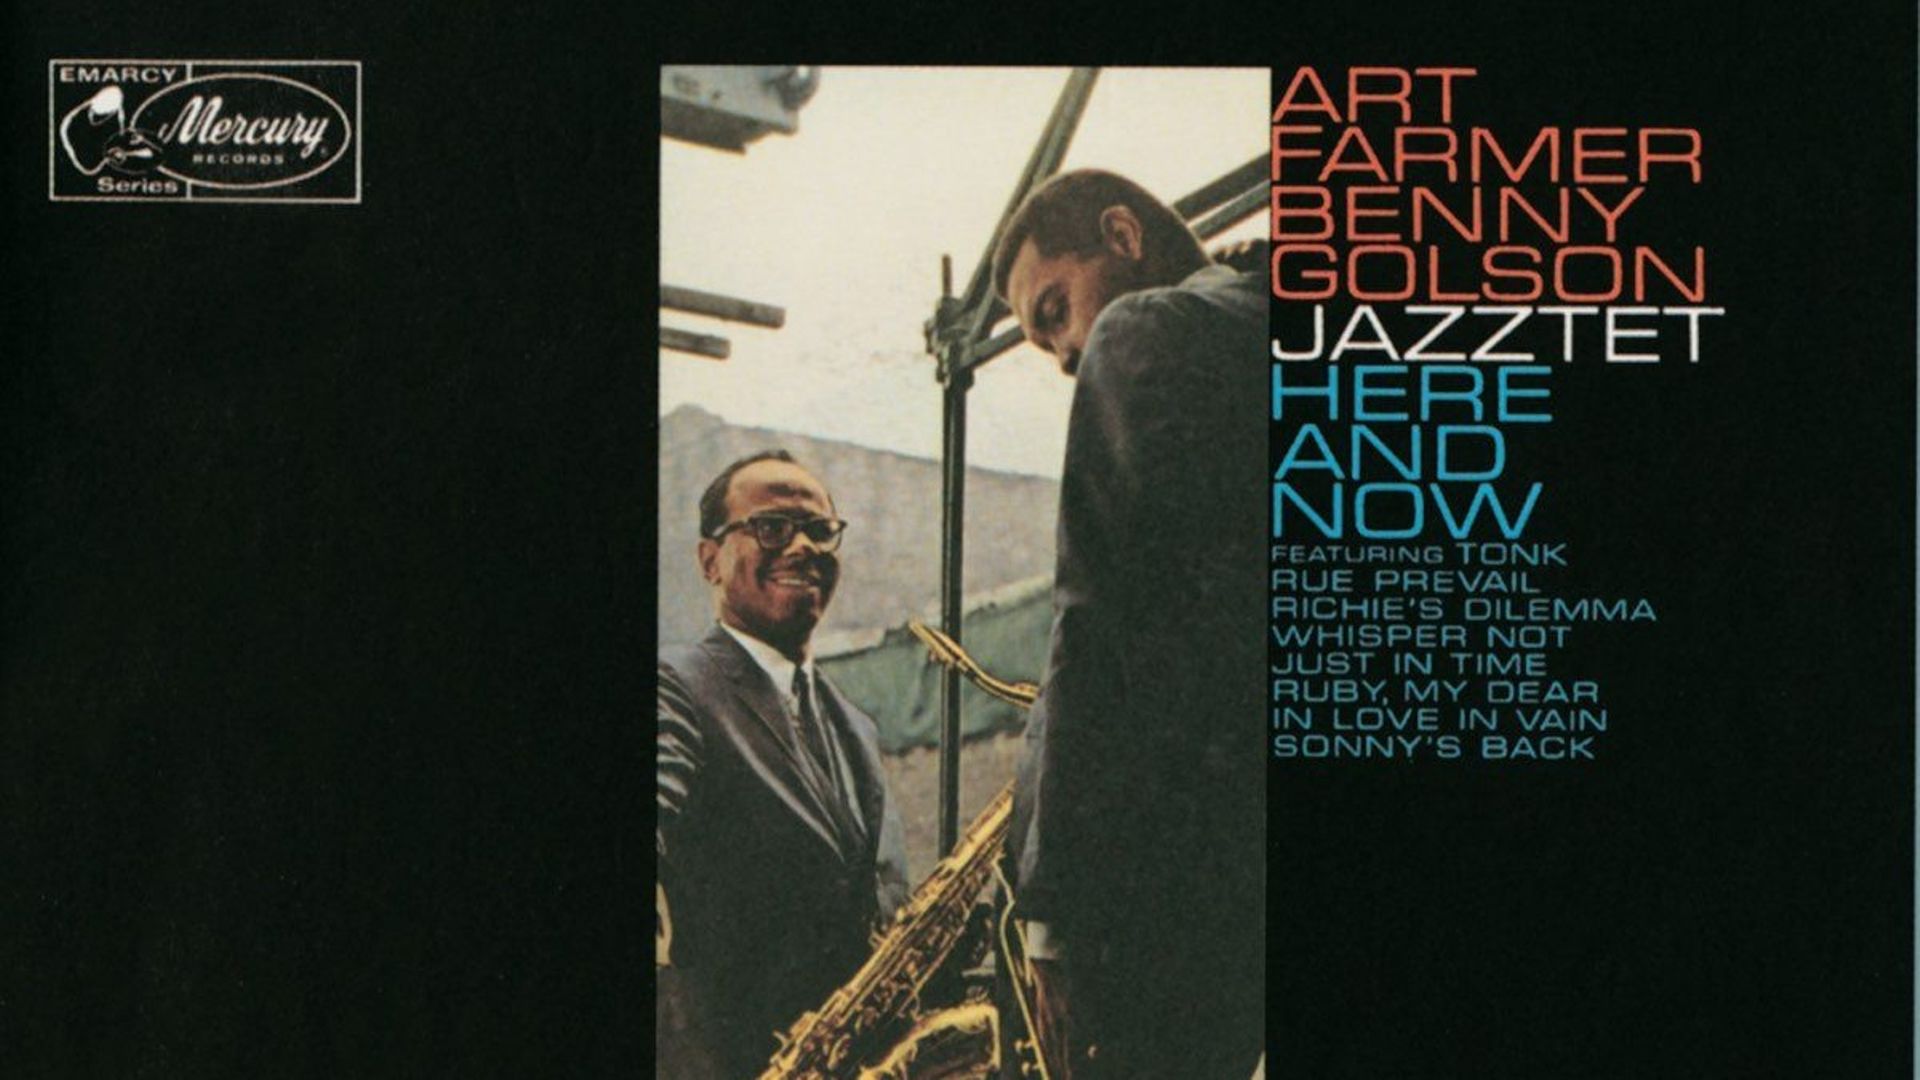 Il y a 60 ans s’enregistrait l’album "Here And Now" du Jazztet